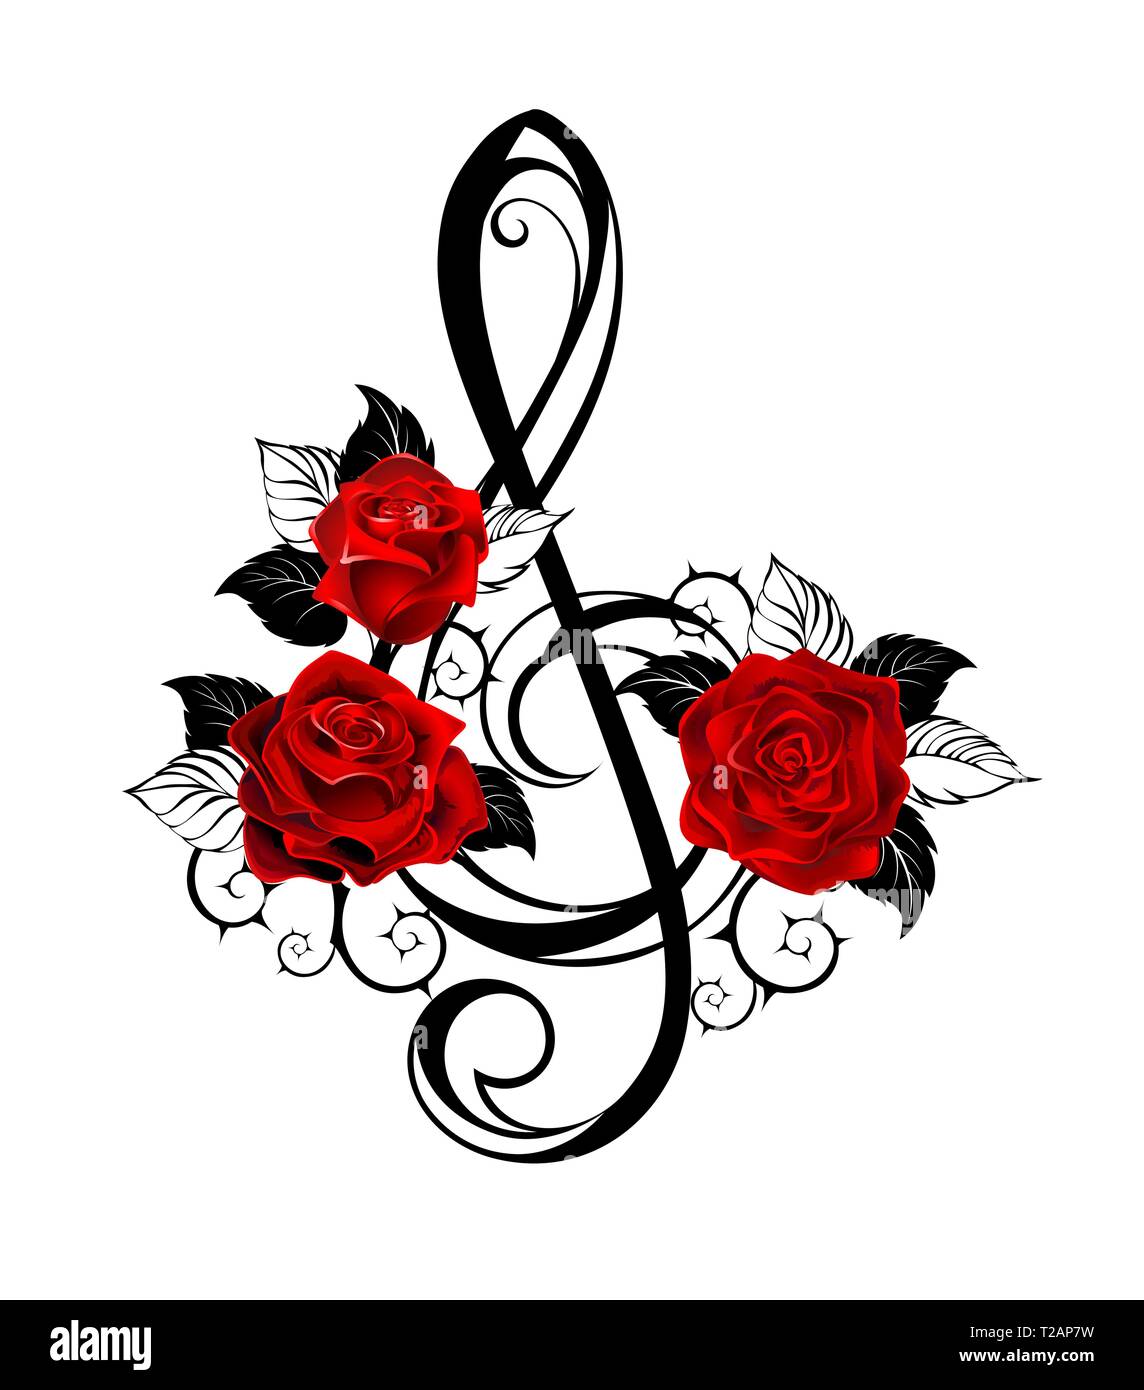 Schwarze Umrahmung, Tonart mit realistischen rote Rosen mit schwarzen Blättern auf weißem Hintergrund. Tattoo Stil. Stock Vektor